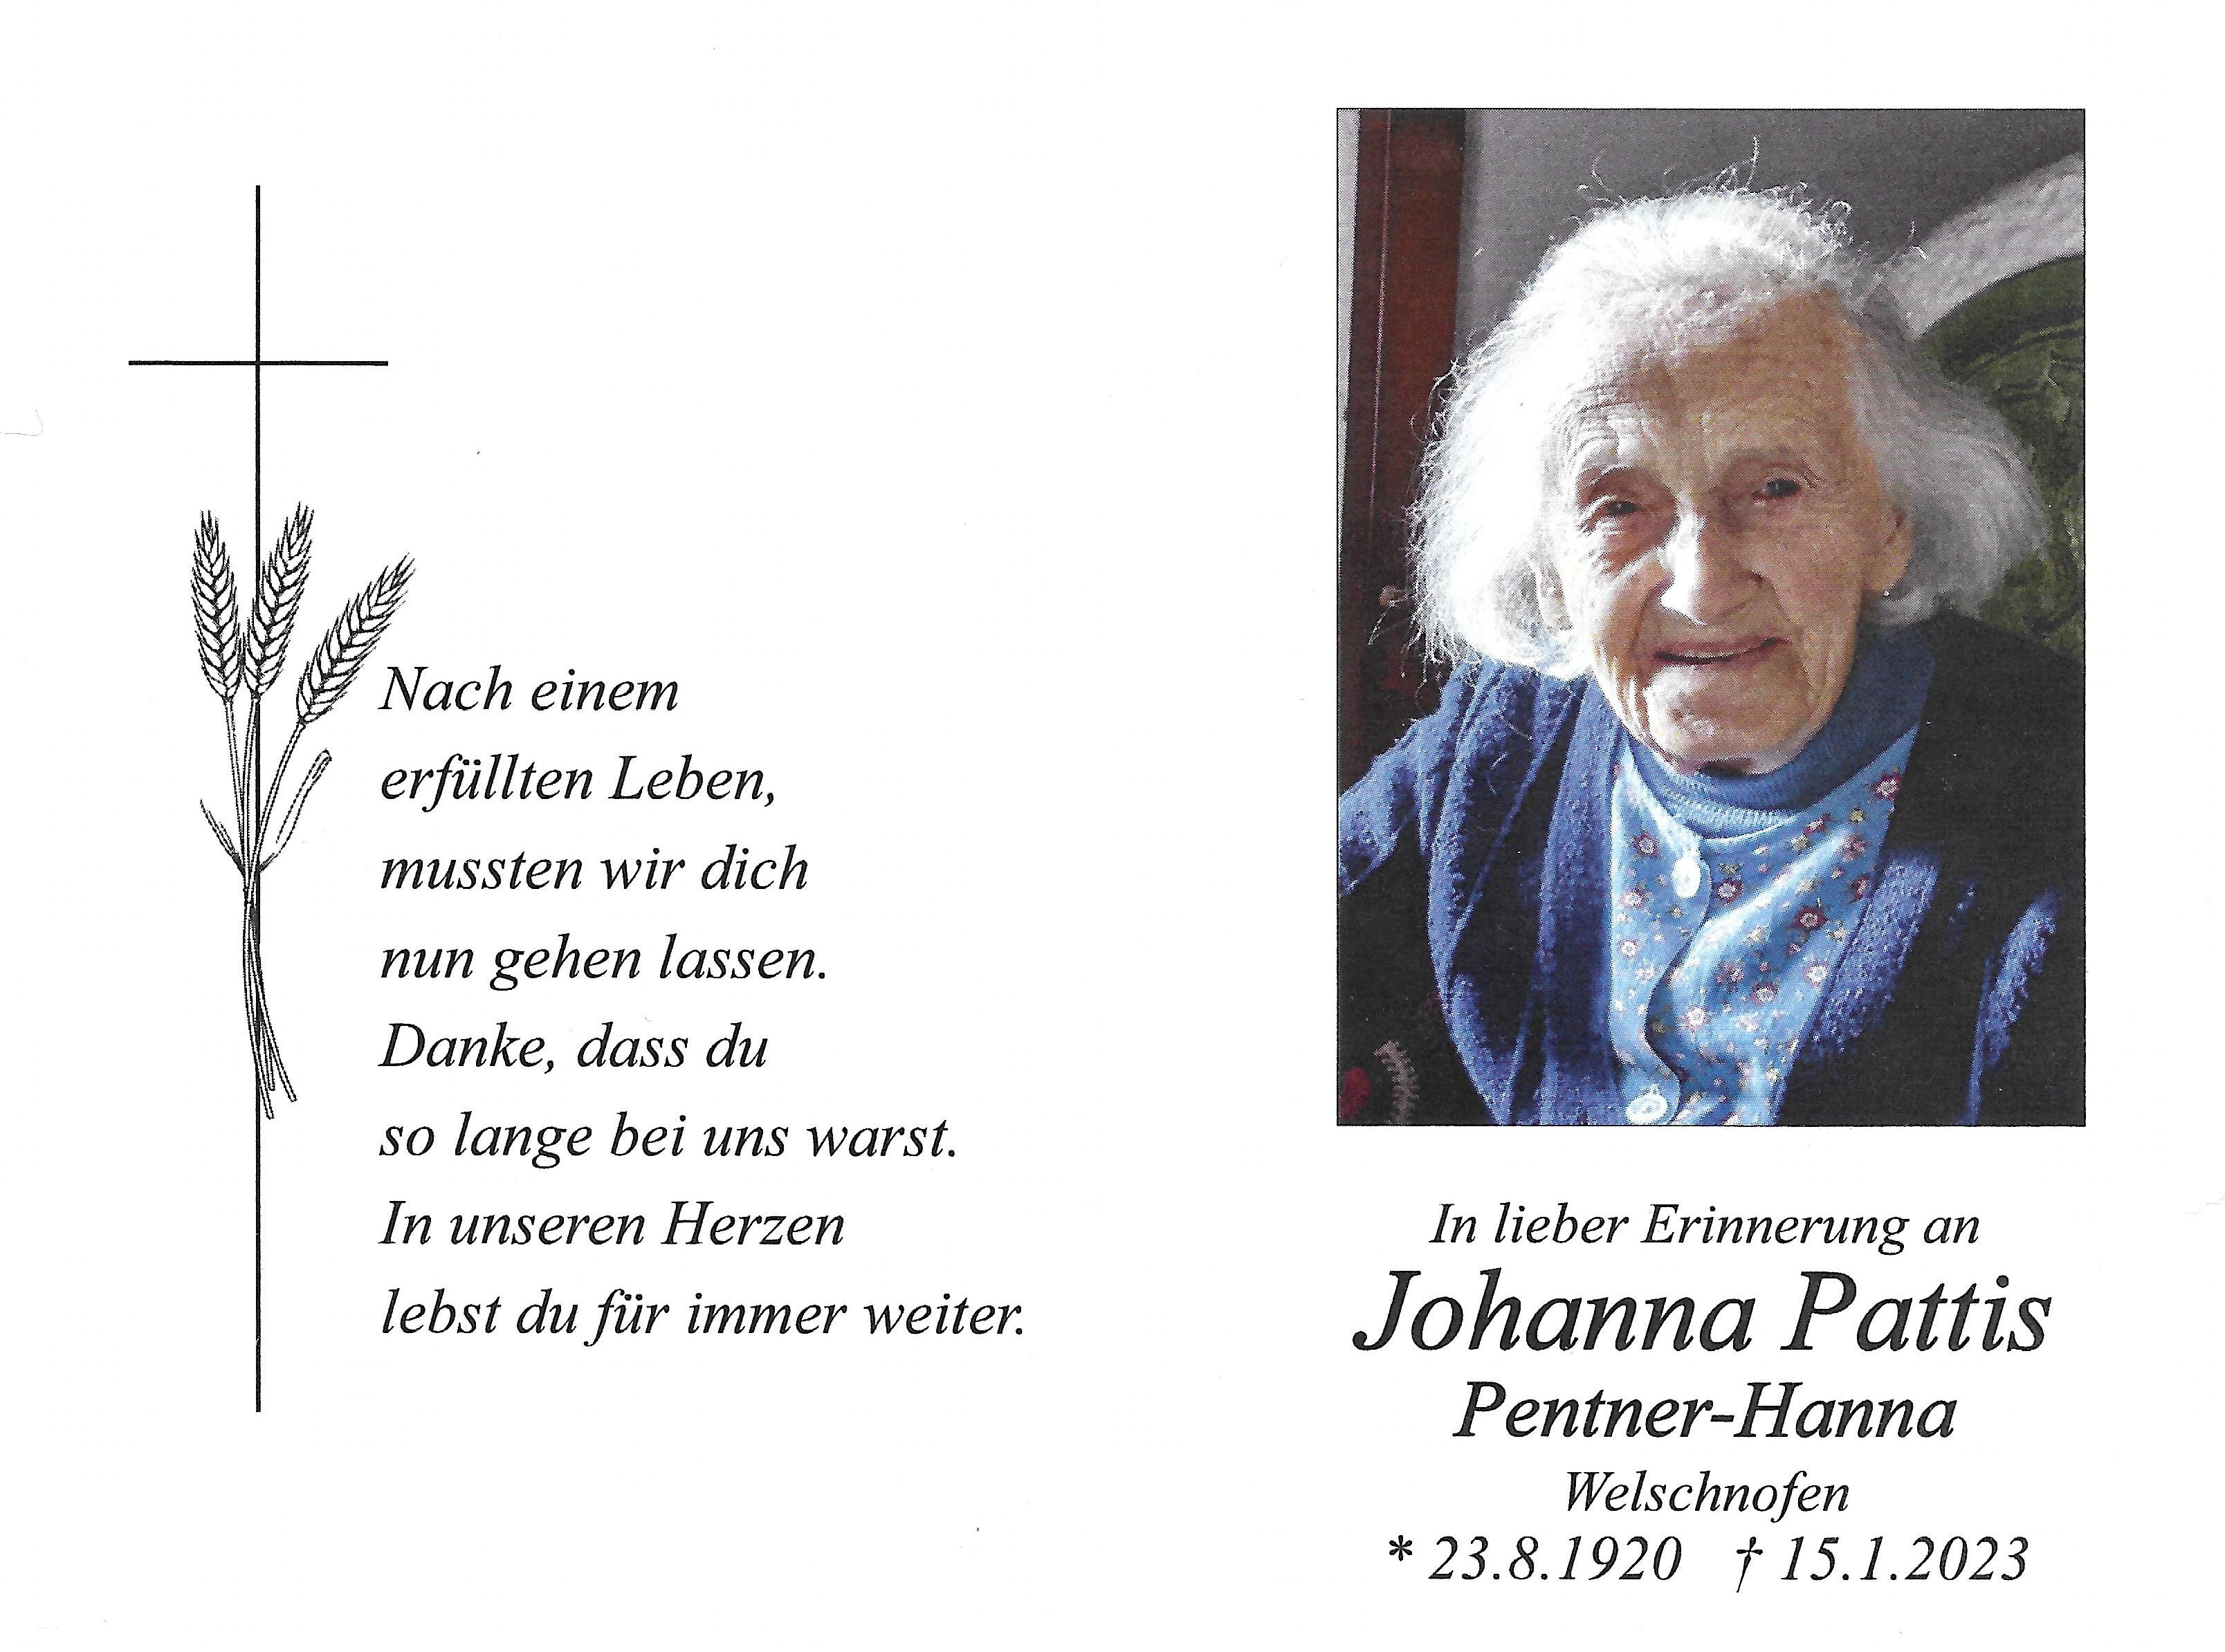 Johanna Pattis Pentner Hanna